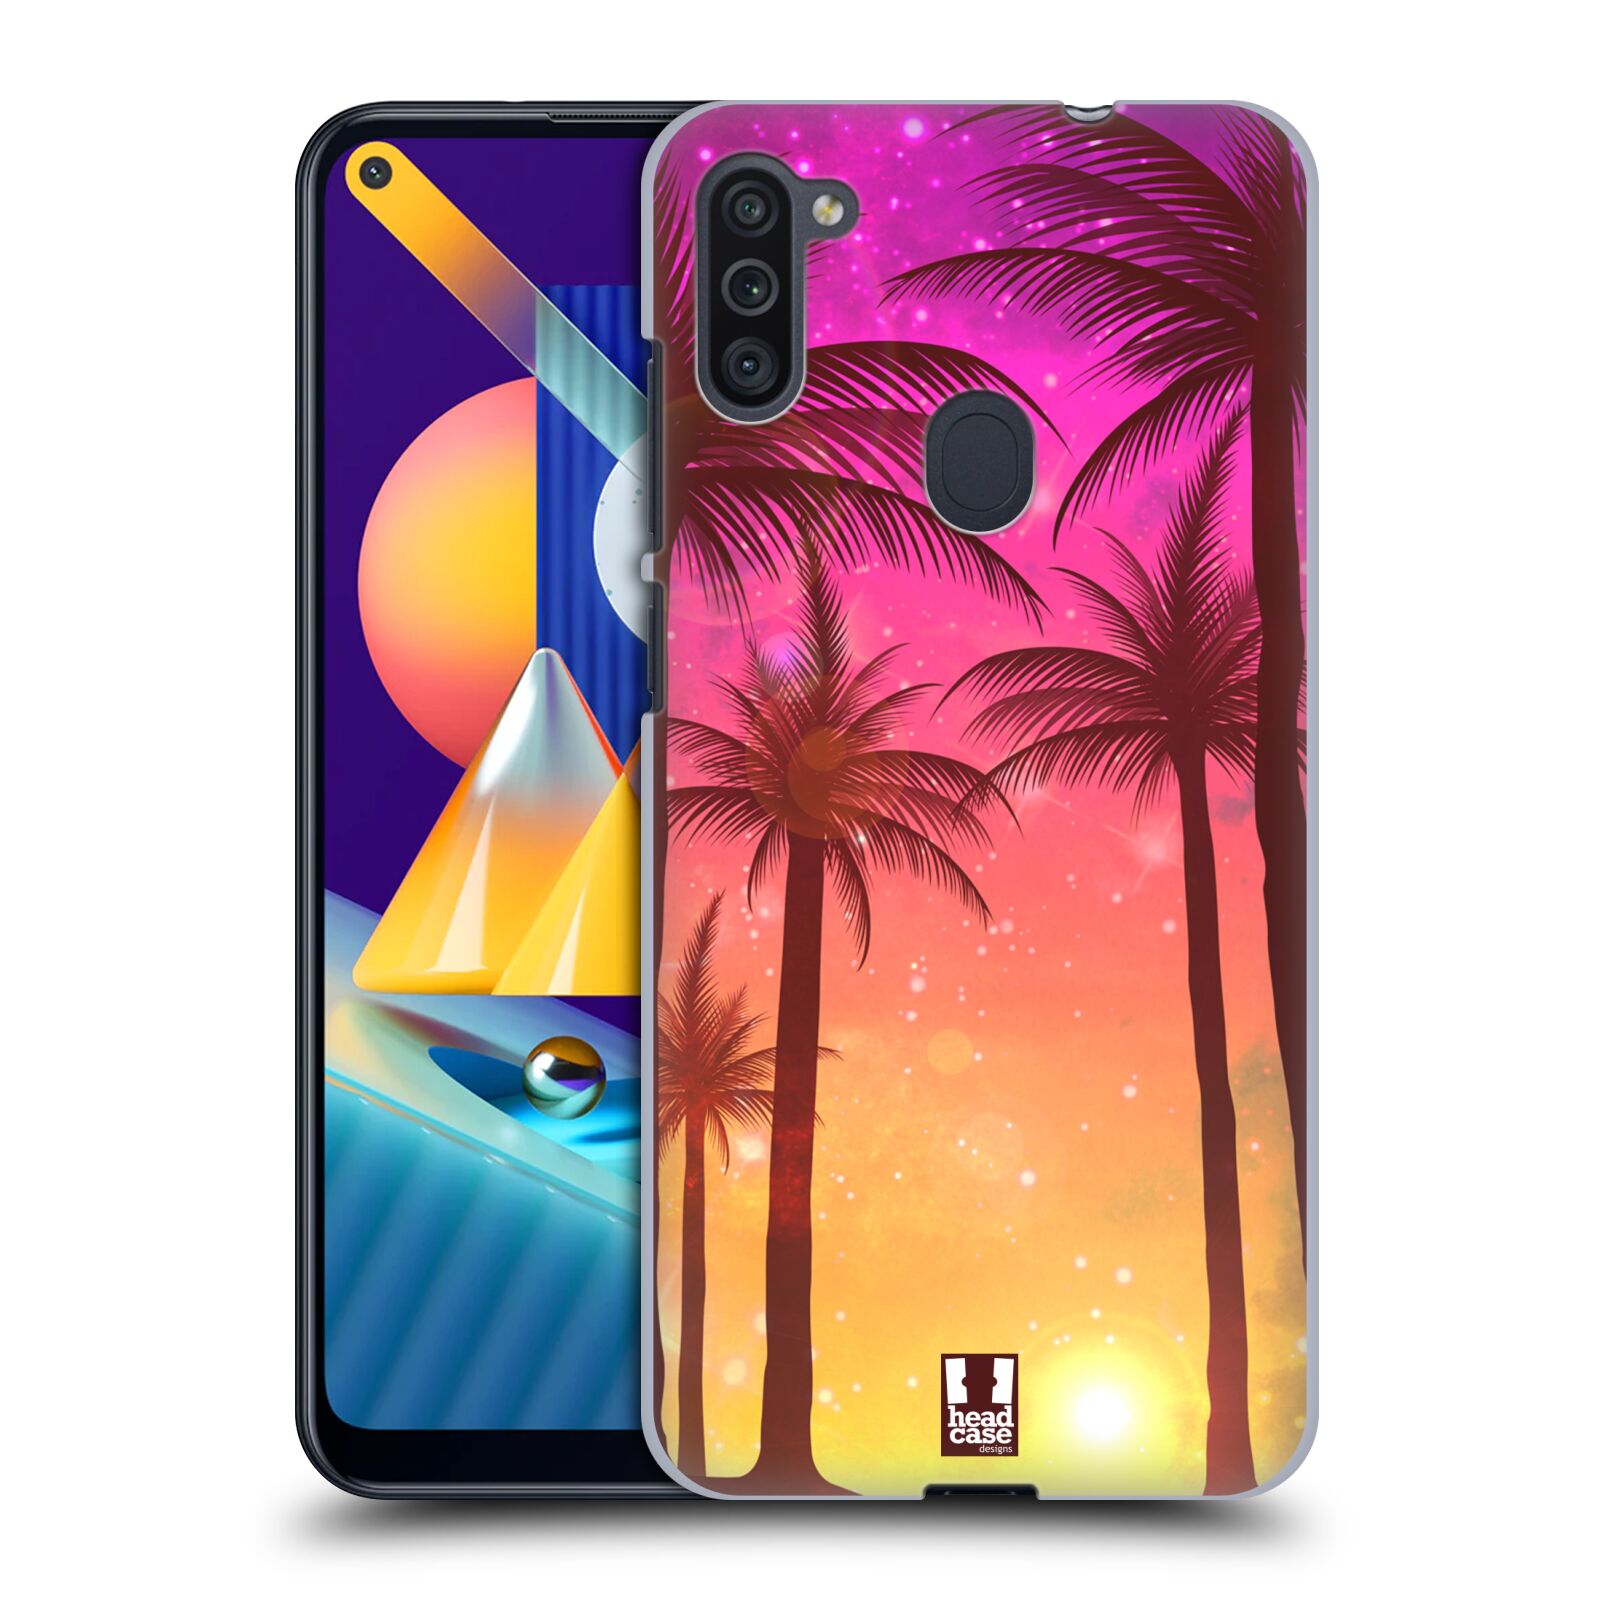 Plastový obal HEAD CASE na mobil Samsung Galaxy M11 vzor Kreslený motiv silueta moře a palmy RŮŽOVÁ